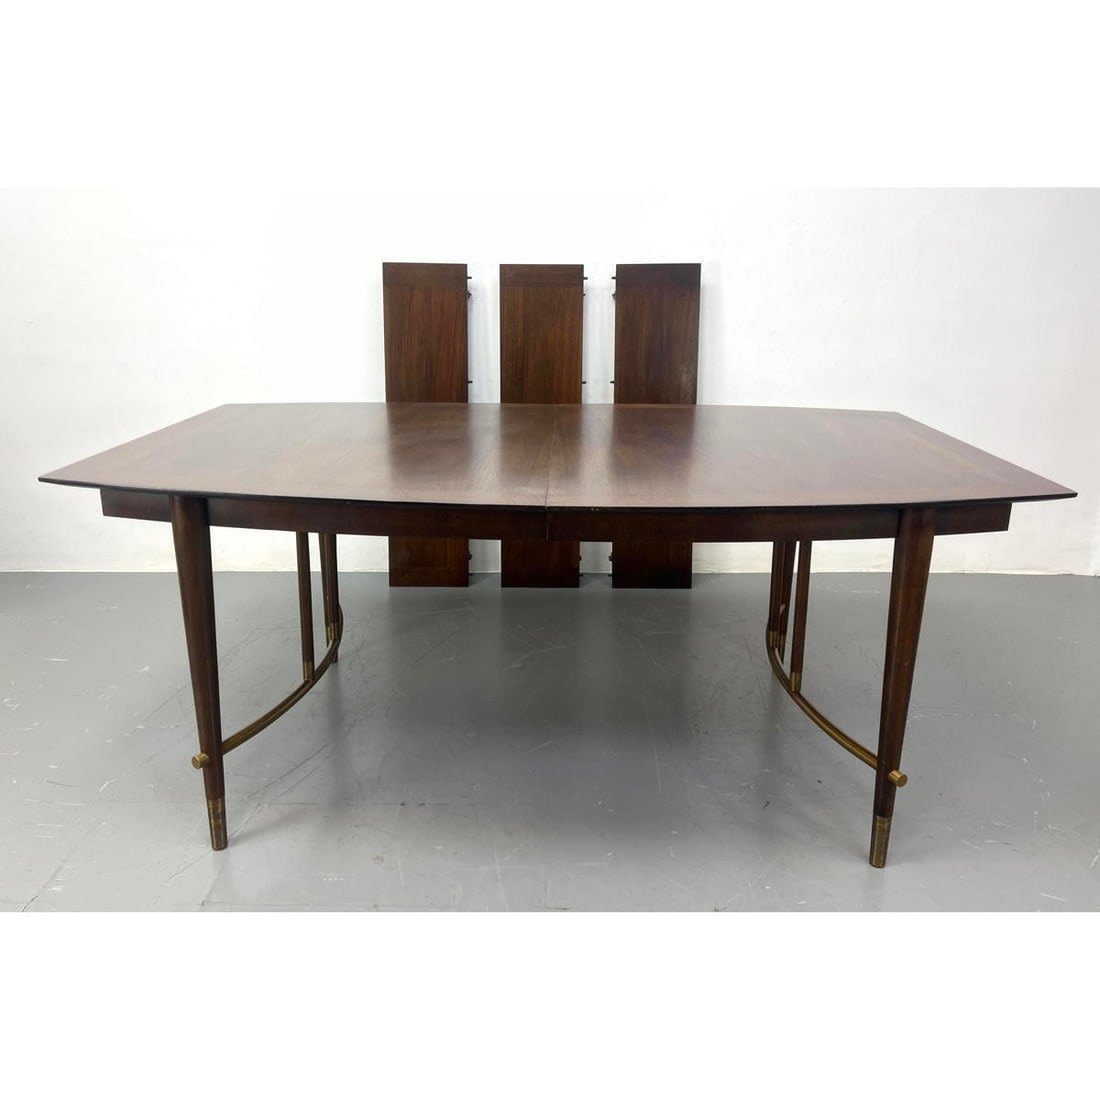 Bert England for Johnson furniture 362cd4